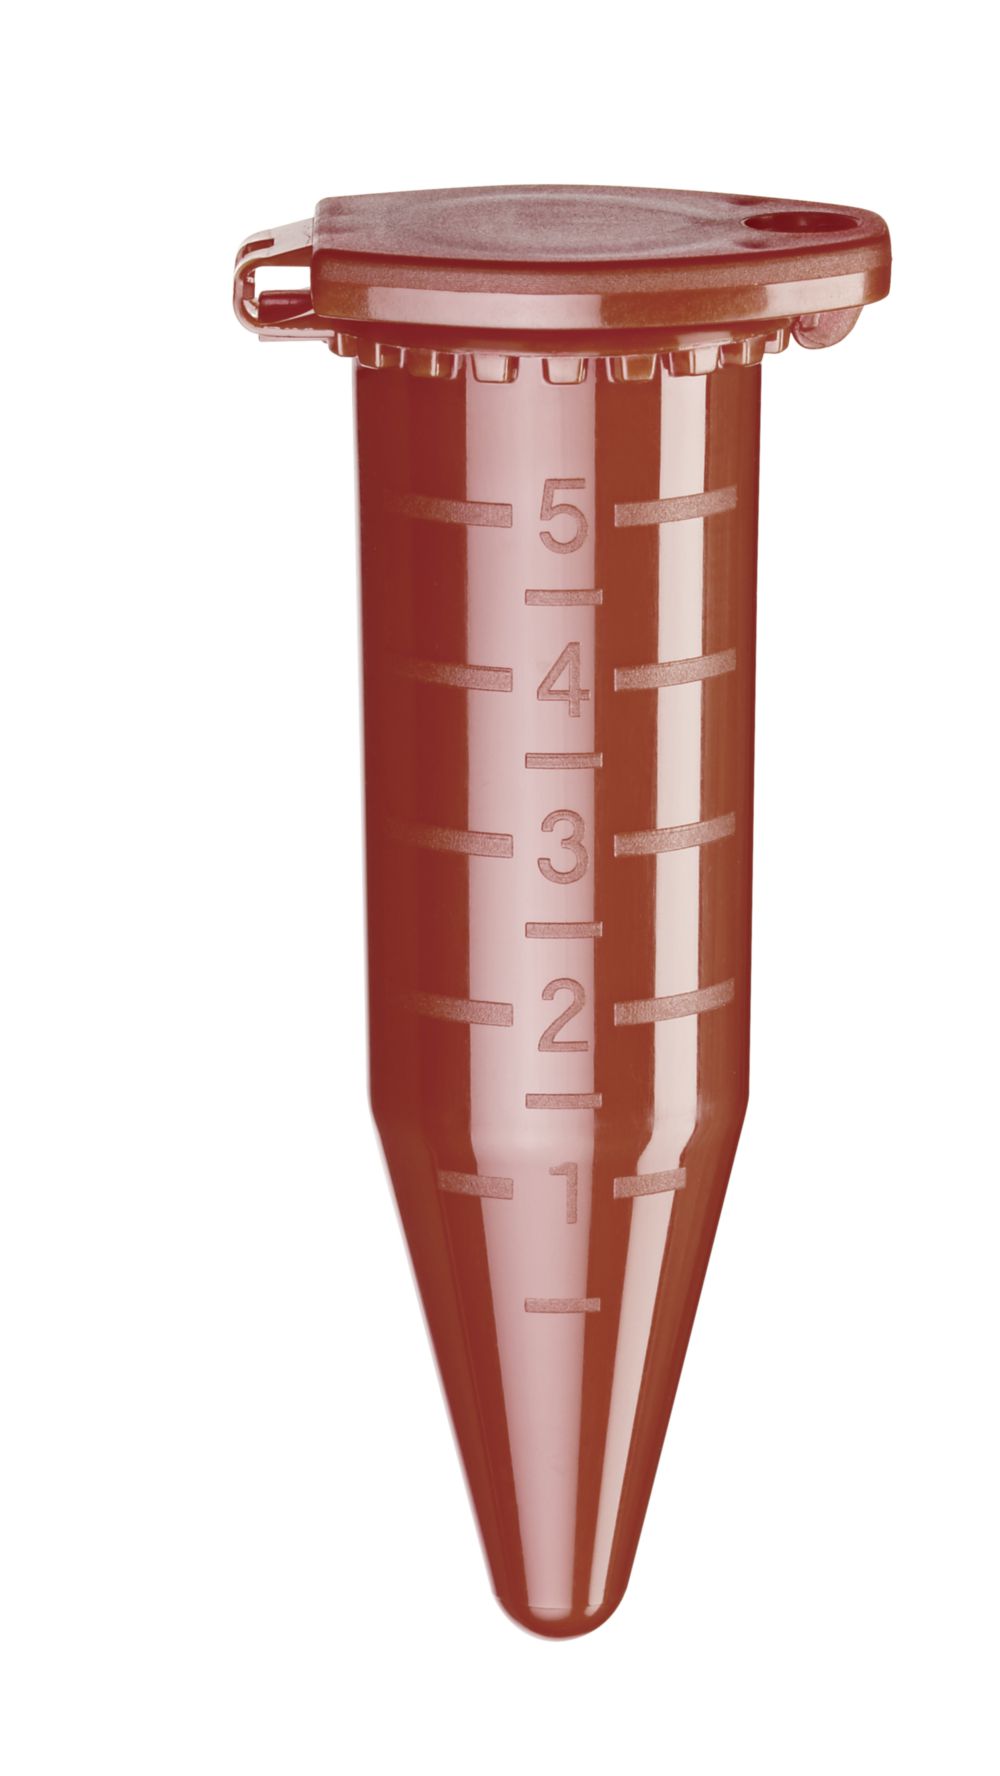 Tubes 5,0 ml ambra, konisch mit Schnappdeckel (200 Stck.)